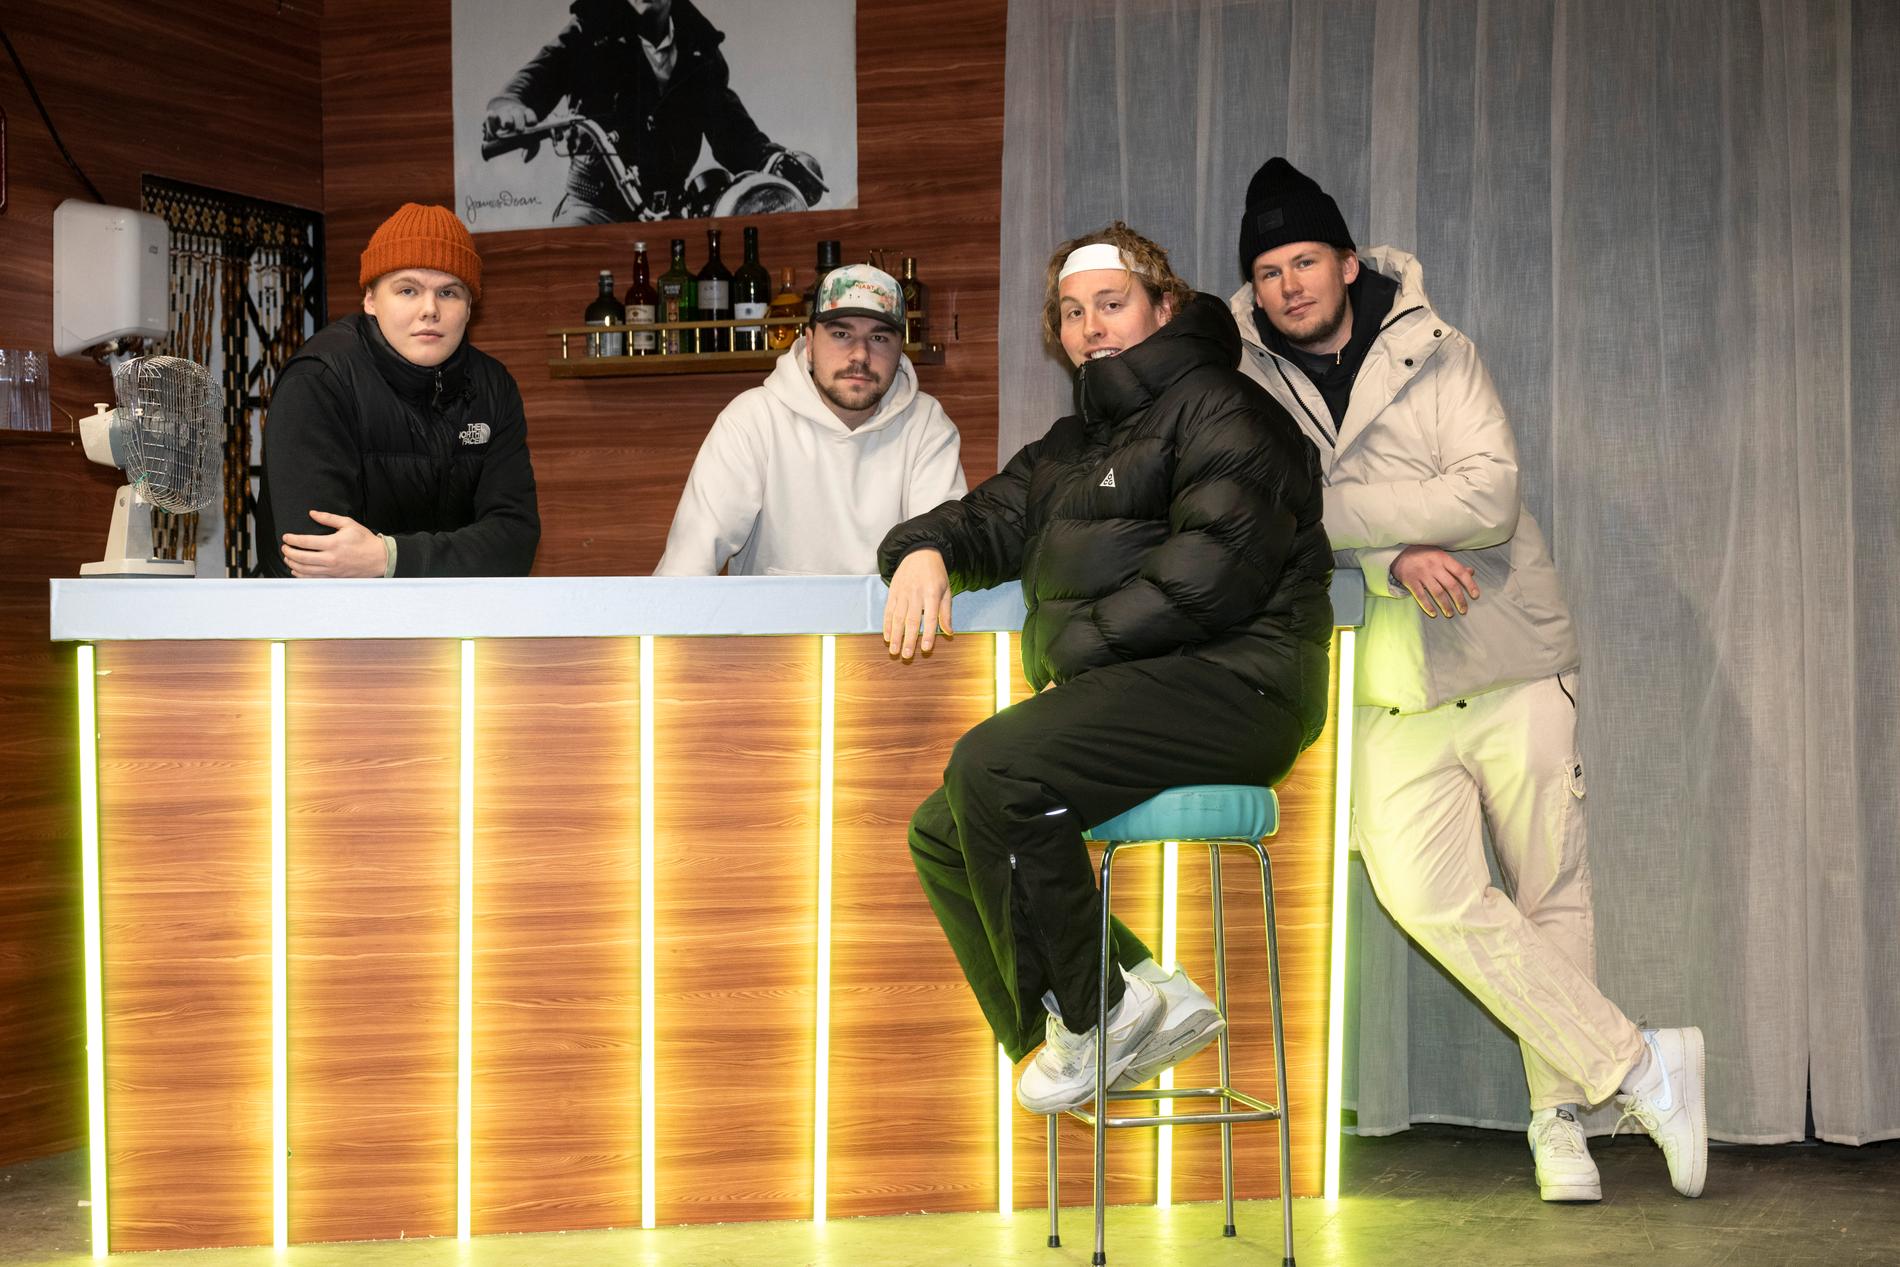 Bolaget uppträder under lördagens "Musikhjälpen" i Växjö. Från vänster: Adam Bergestål, Gustav Jörgensen, Oliver Norquist och William Ahlborg.